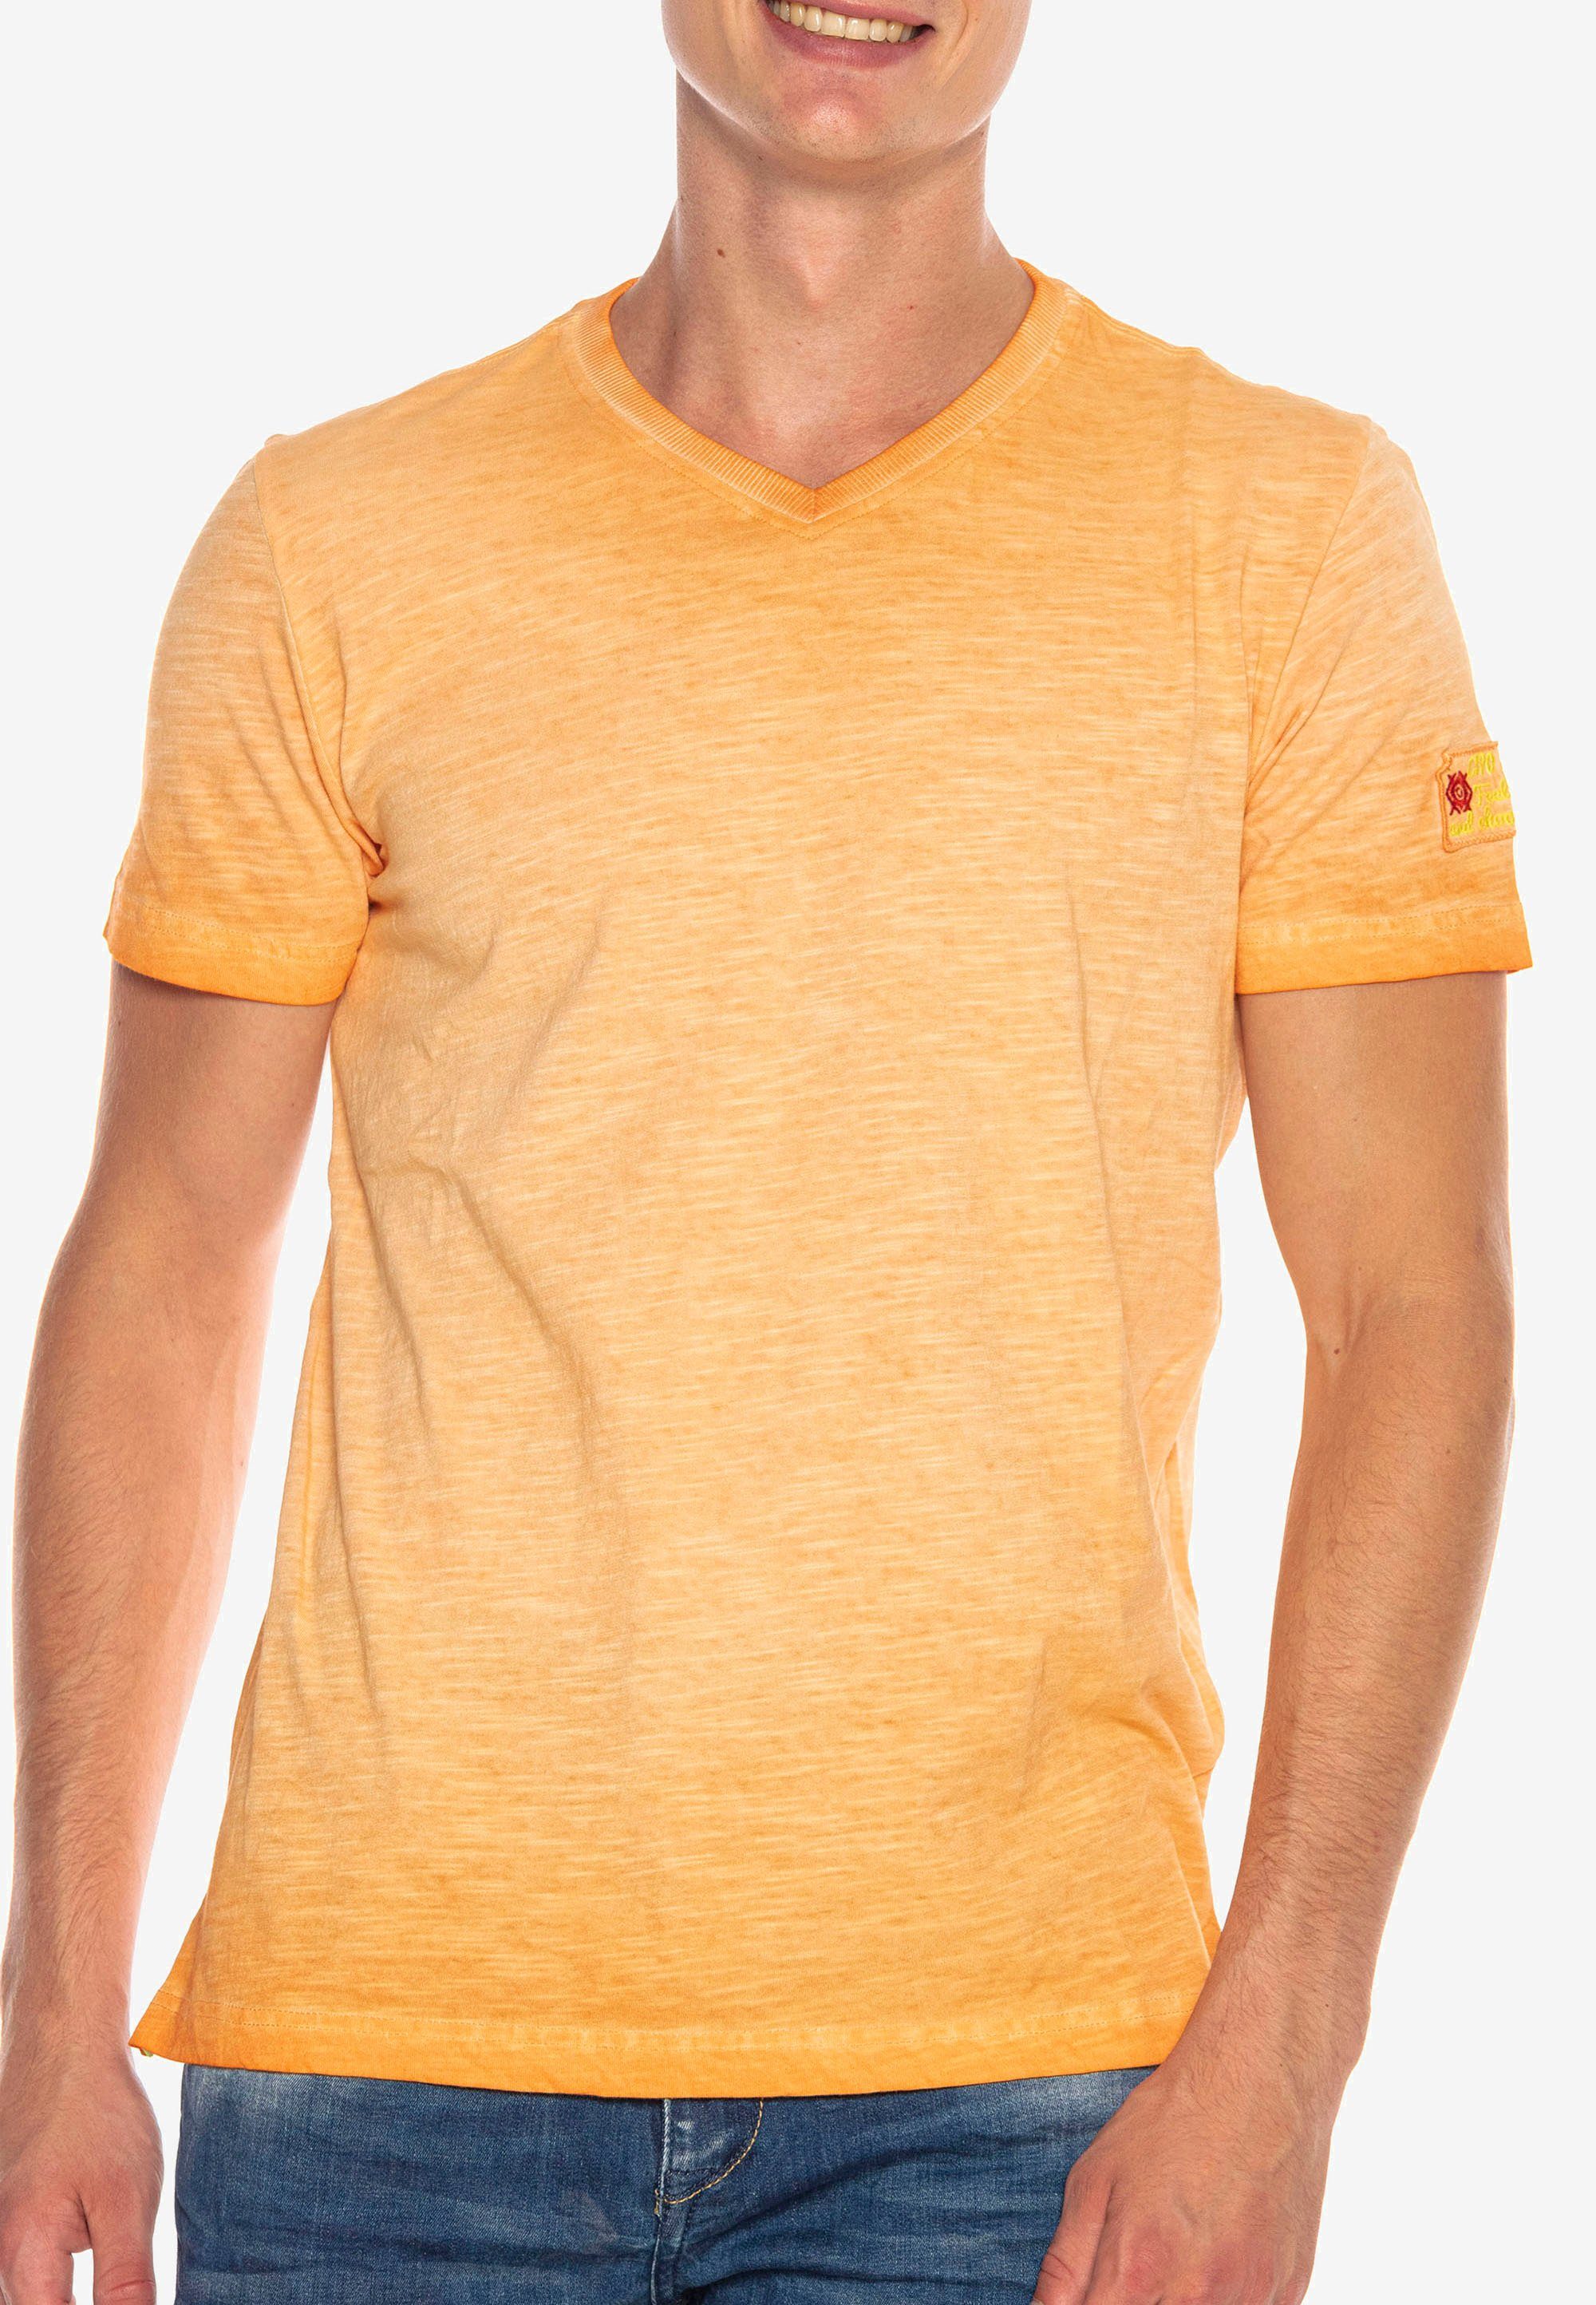 & mit Logo-Patch T-Shirt orange Baxx kleinem Cipo